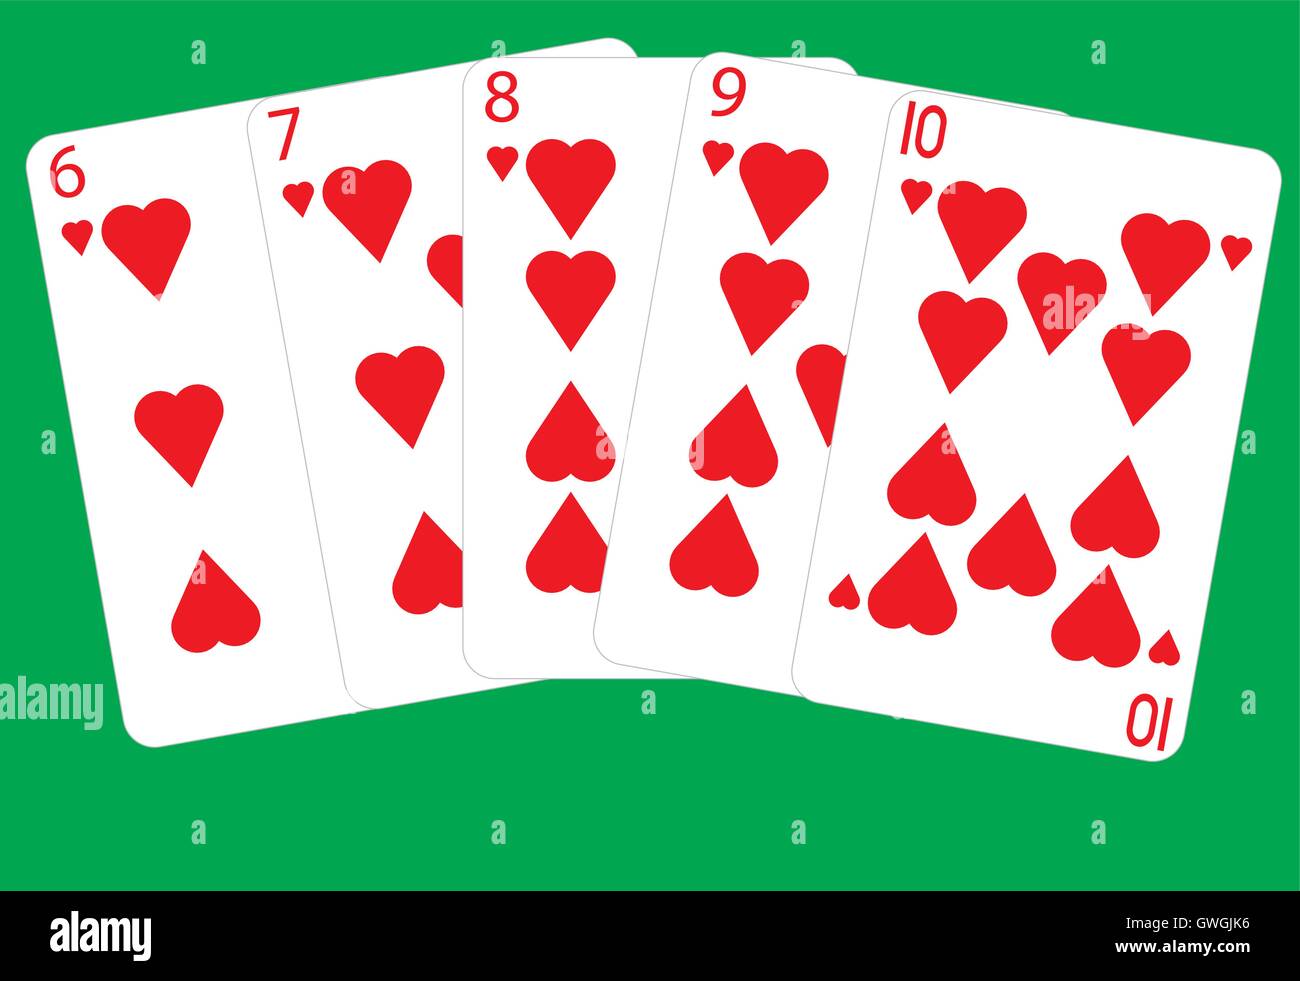 Une Quinte Flush Winning Poker main sur un fond vert Illustration de Vecteur